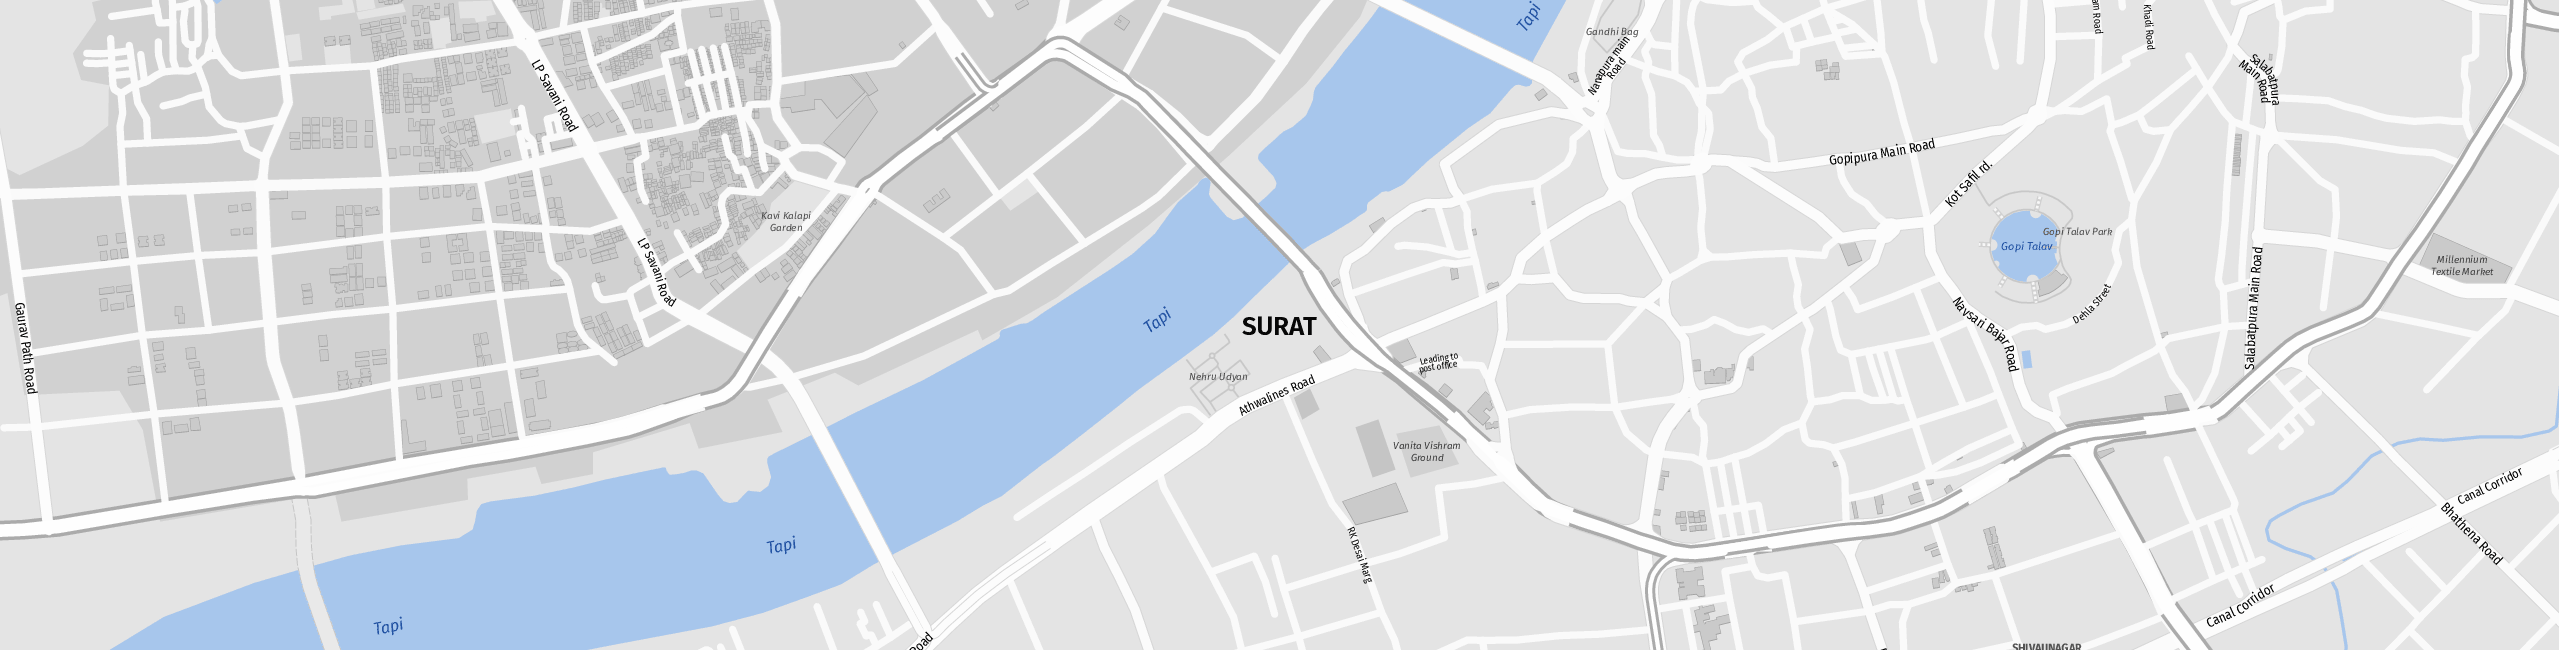 Stadtplan Surat zum Downloaden.